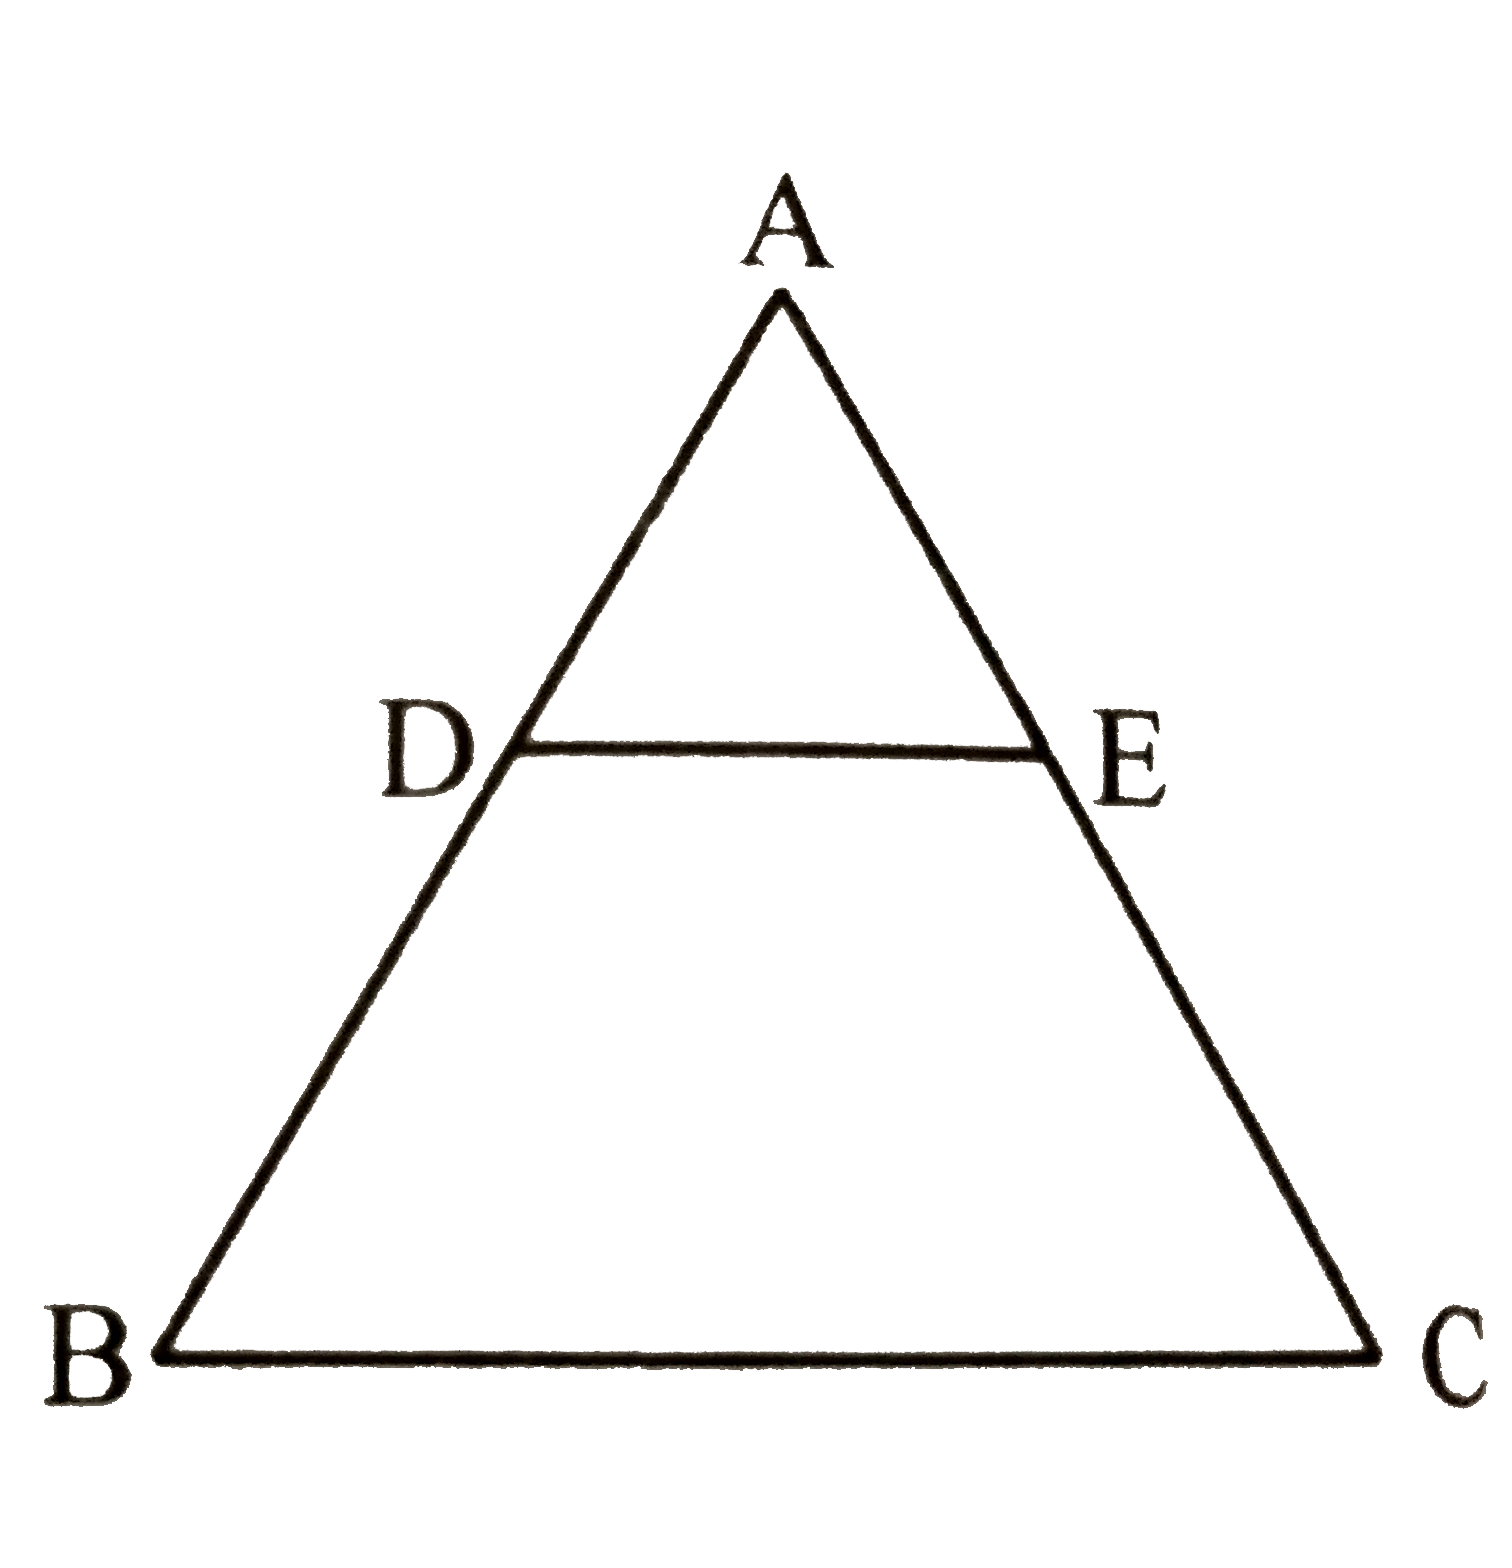 एक triangle ABC की भुजाओं AB तथा AC पर क्रमशः बिंदु D तथा E है | तथा DE||BC और triangle ABC दो बराबर भागो के क्षेत्रफलो में बँटा हुआ है तो (BD)/(AB) का मान ज्ञात कीजिए |